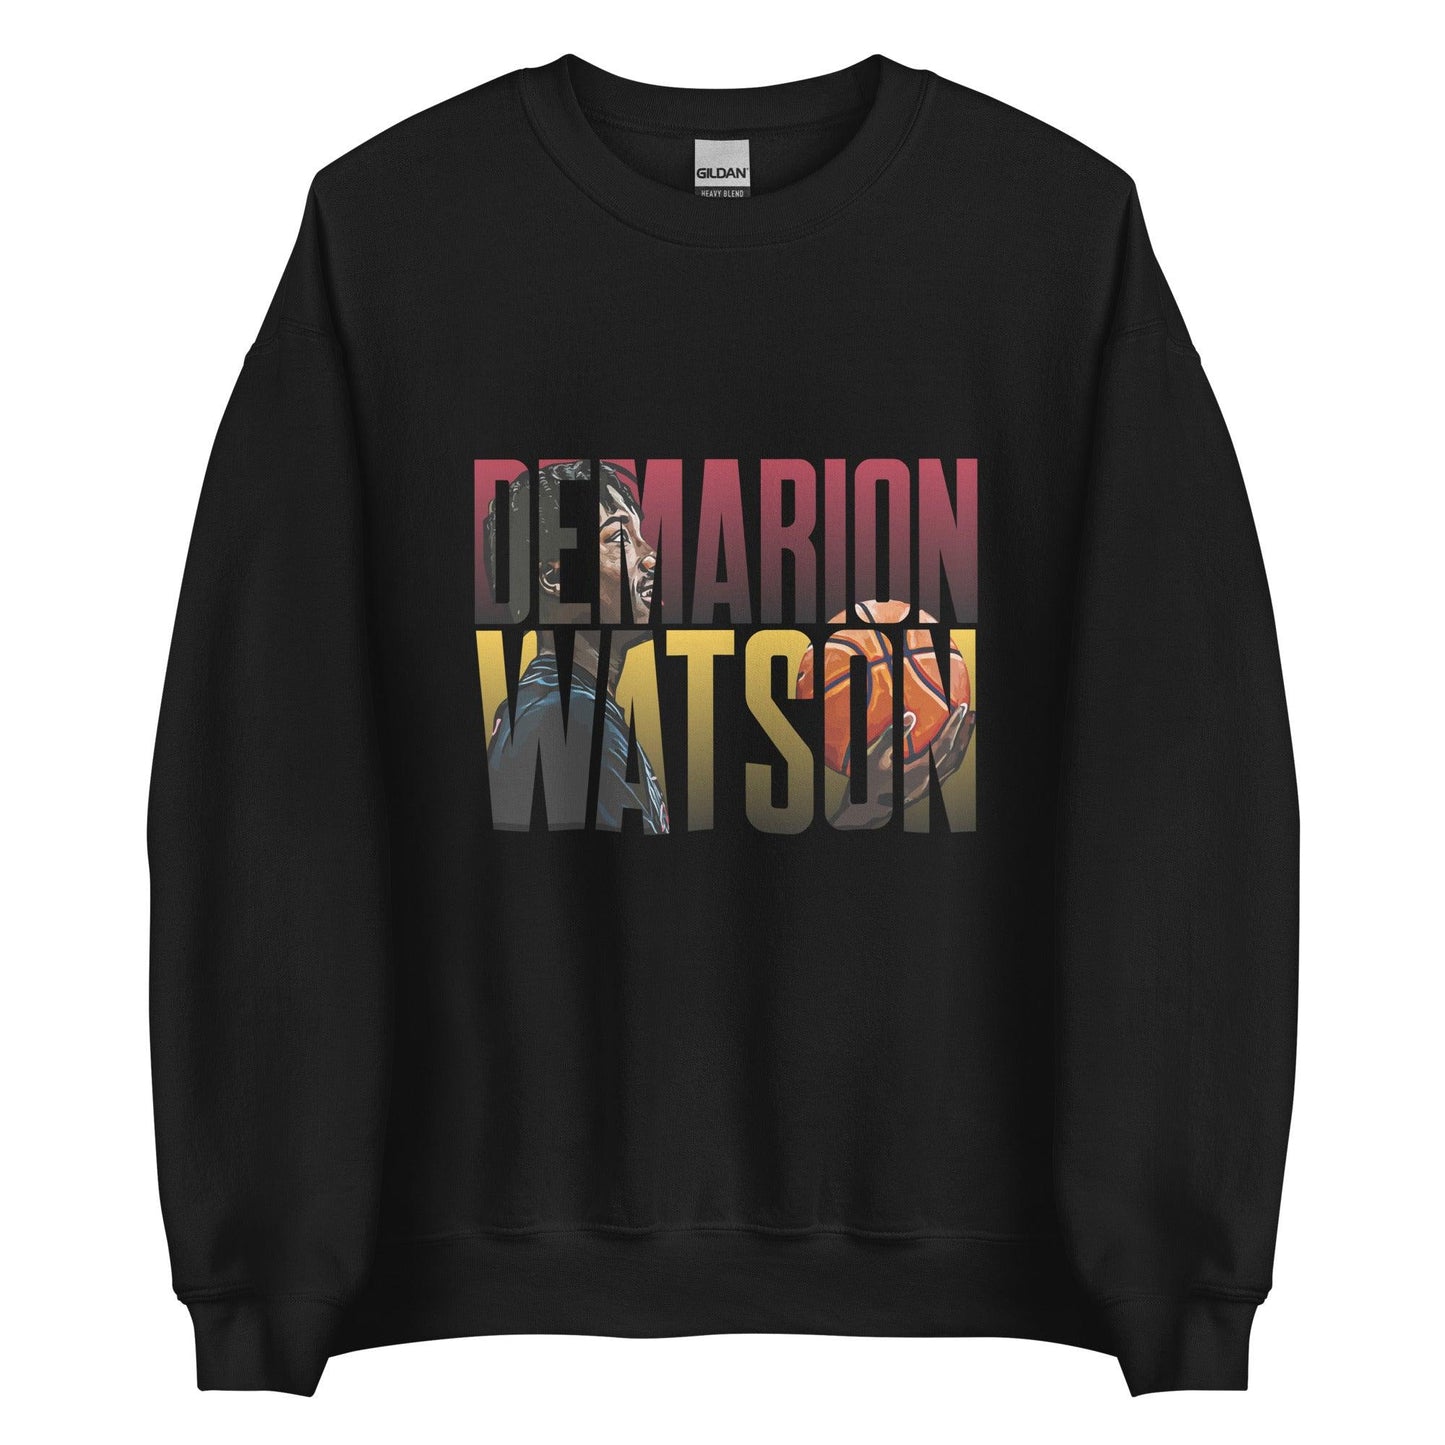 Demarion Watson "Future Star" Sweatshirt - Fan Arch